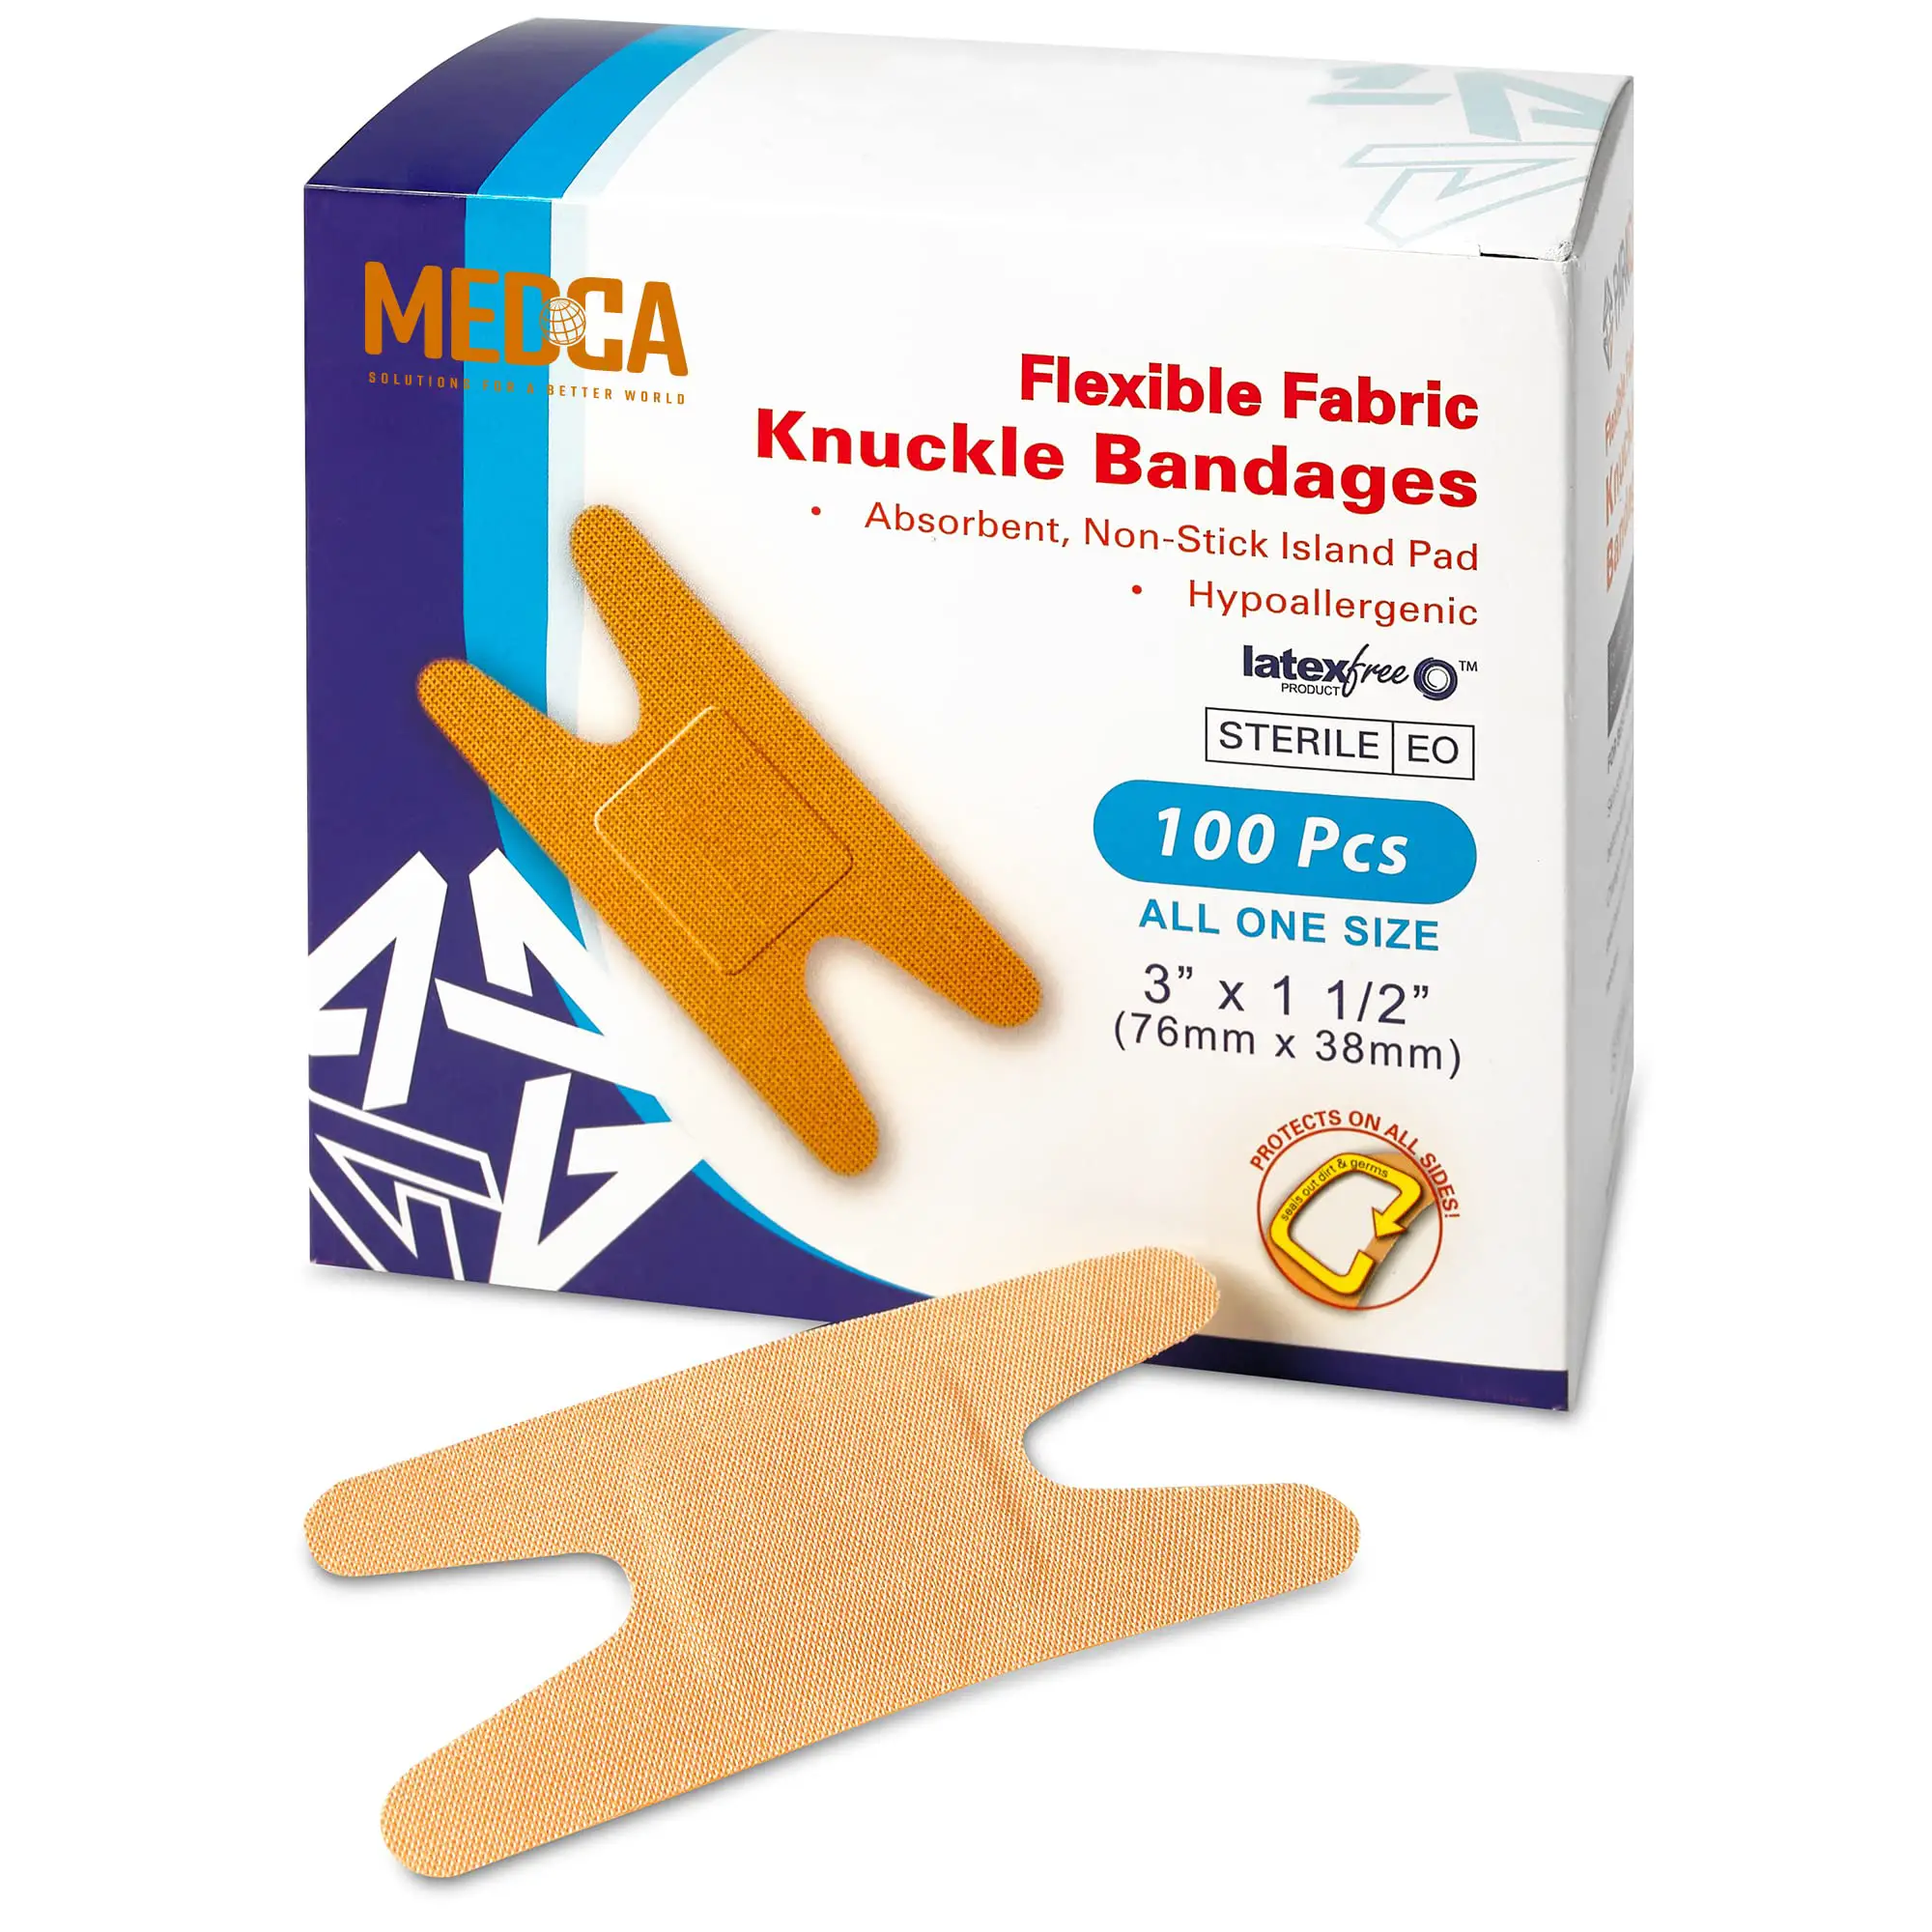 MEDca Flexible Fabric Bandages